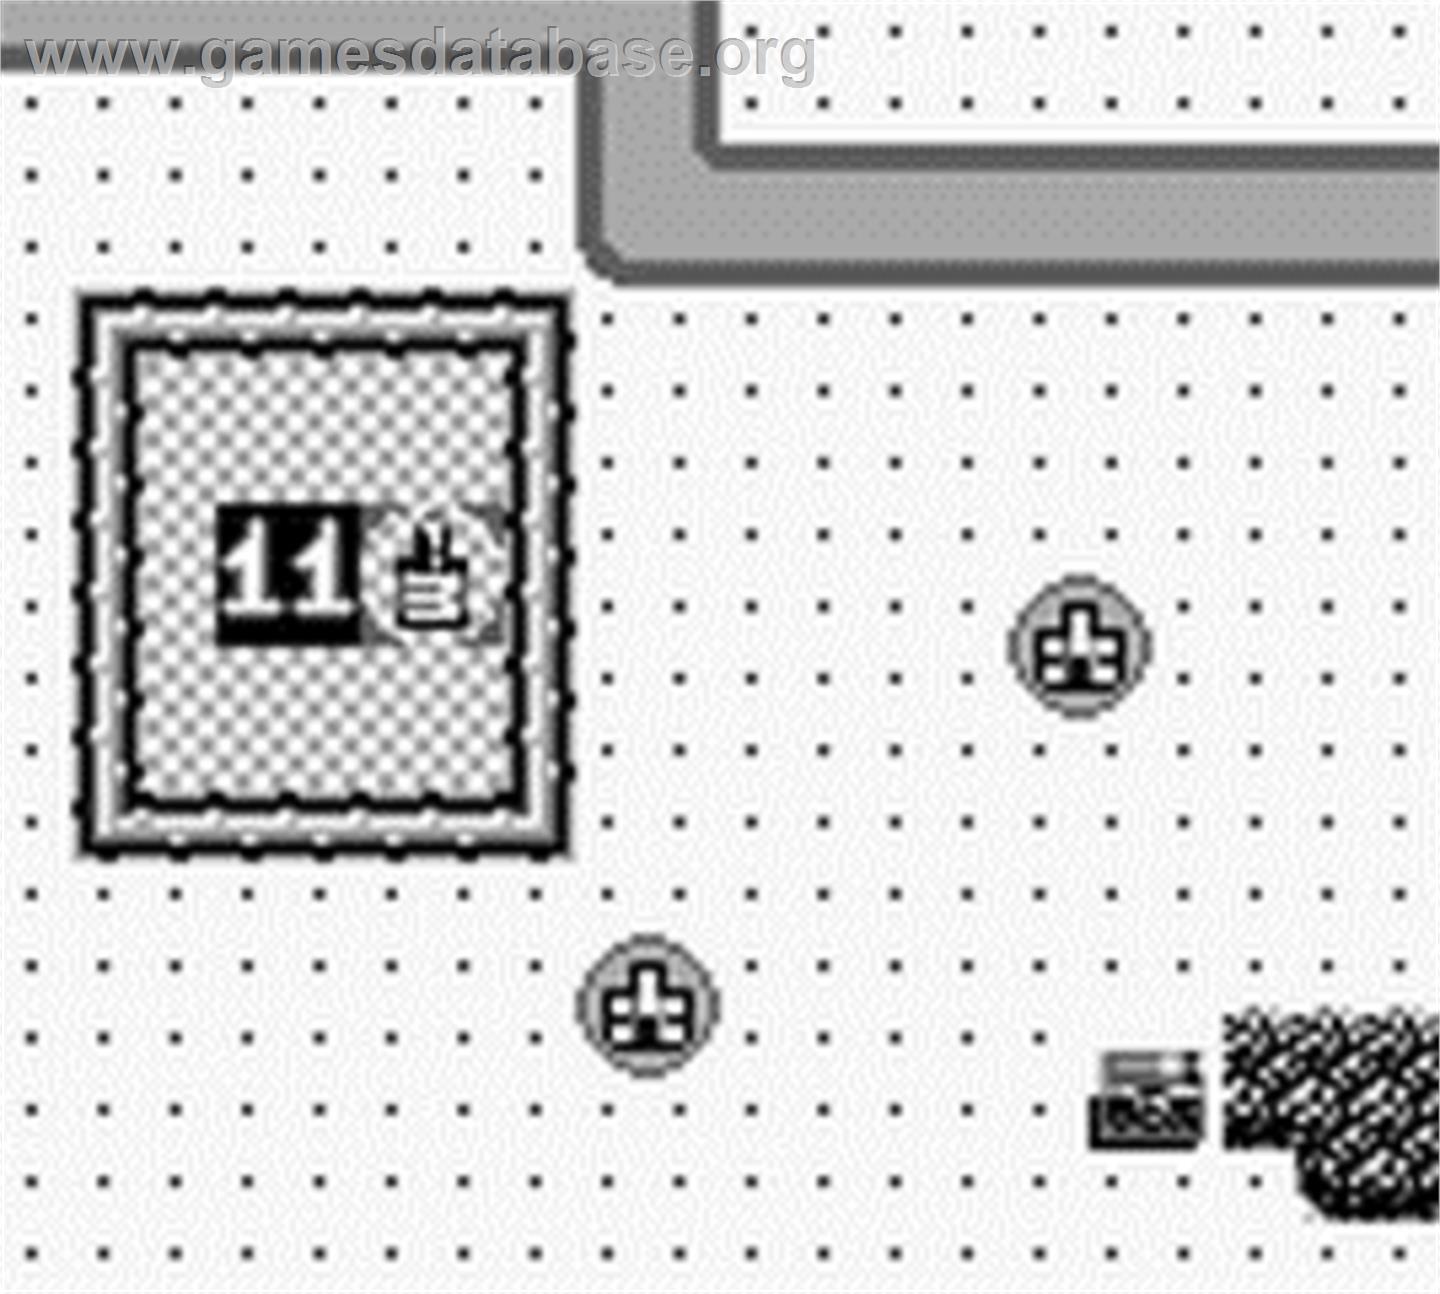 Rampart - Nintendo Game Boy - Artwork - In Game